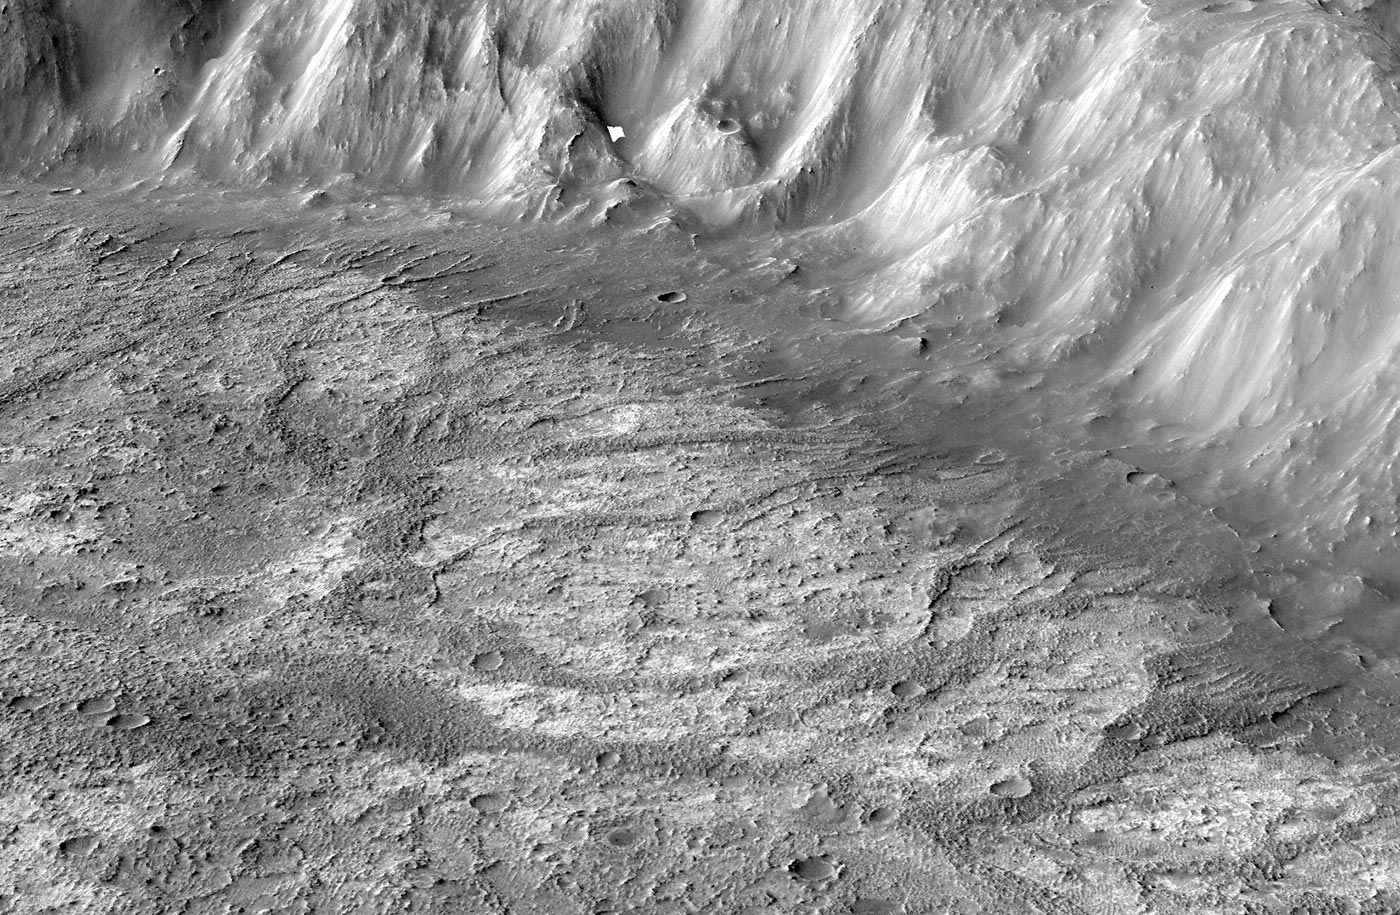 布朗大学研究人员在火星发现古代火山口湖泊 可能会揭示有关该星球早期气候的线索